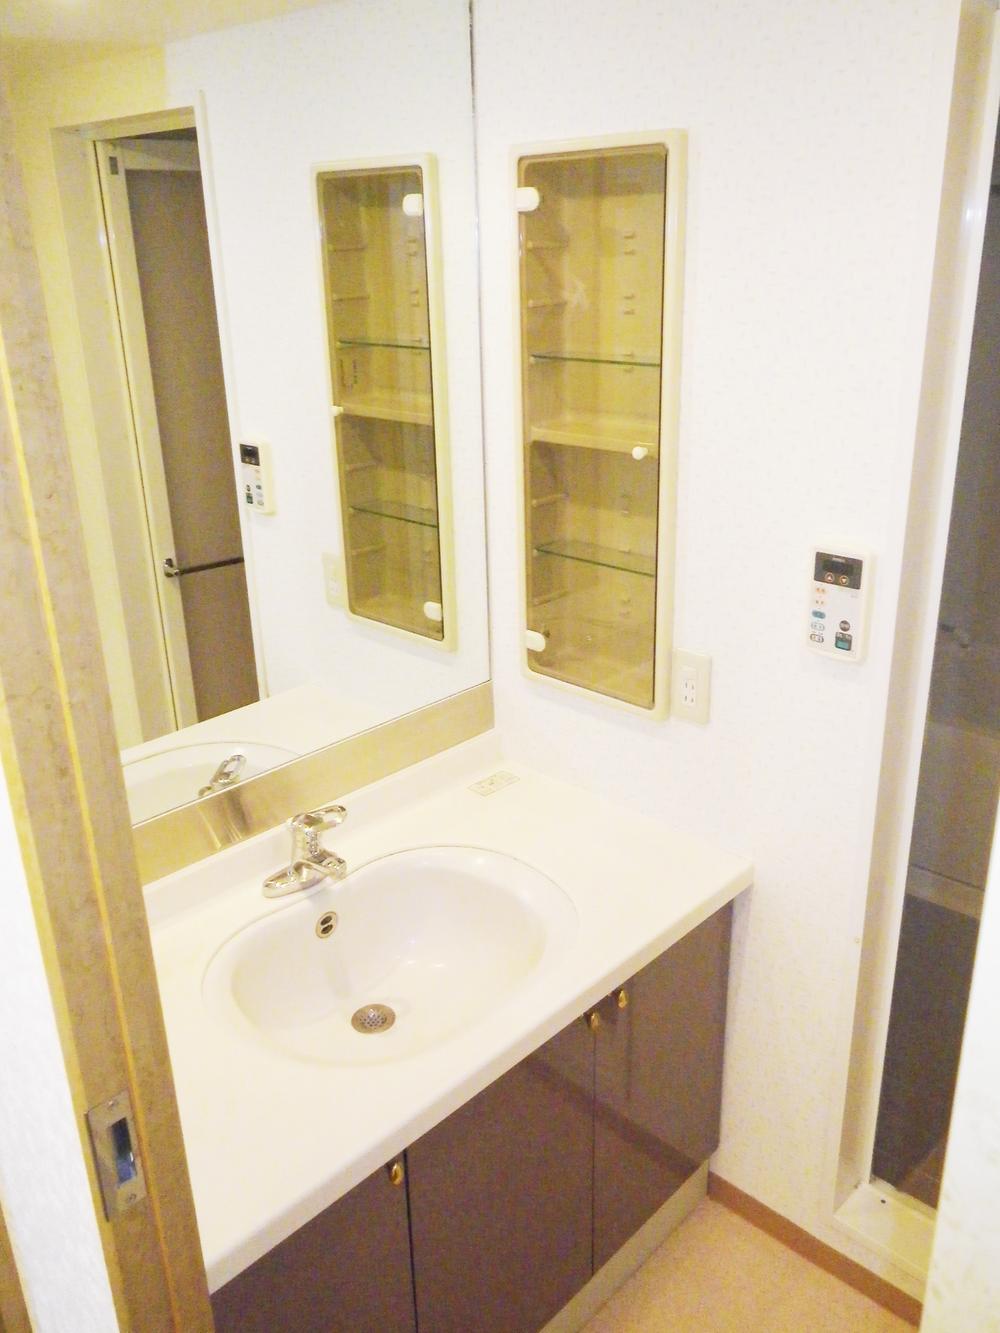 Wash basin, toilet. It is a large mirror storage rich washroom